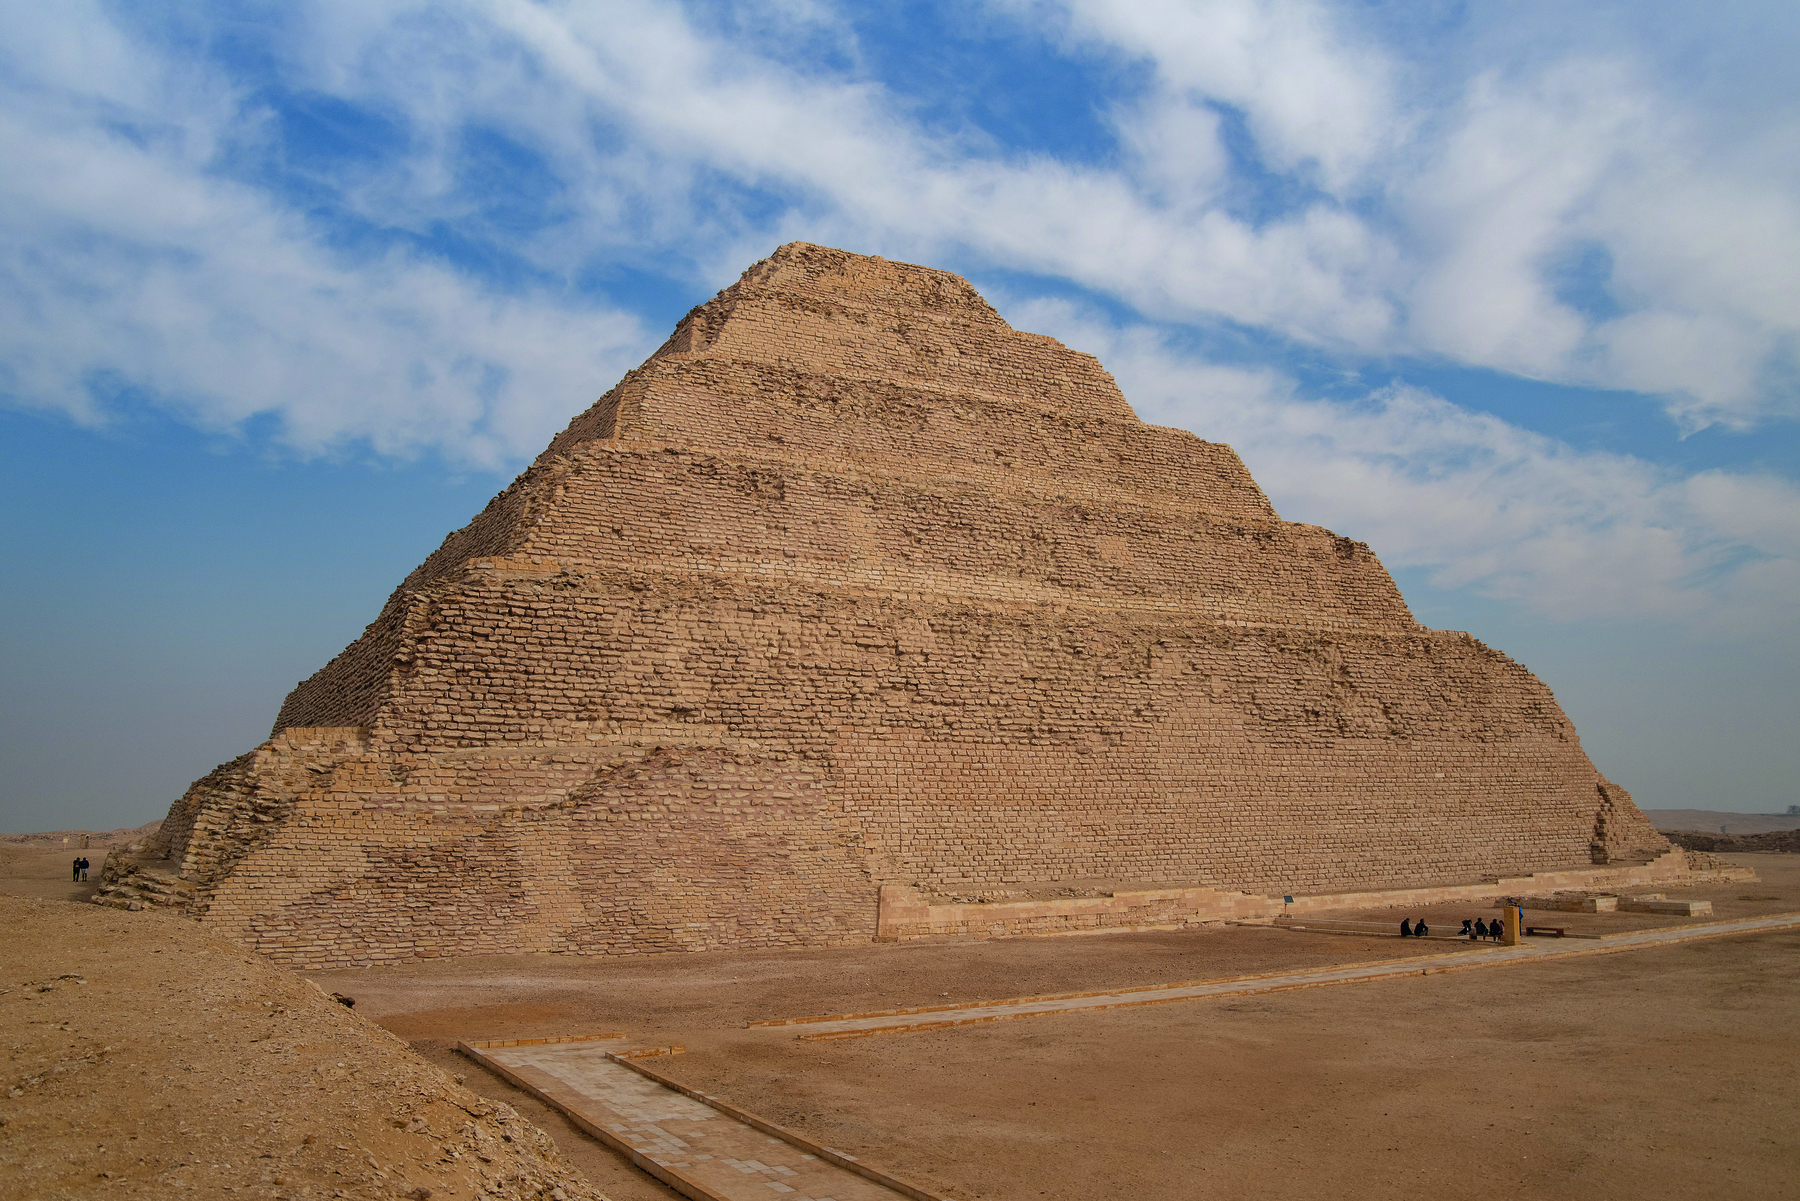 Fotografia. Vista de uma pirâmide em níveis retangulares, decrescentes da base para o ápice. Ao redor, terreno arenoso e céu azul com nuvens.